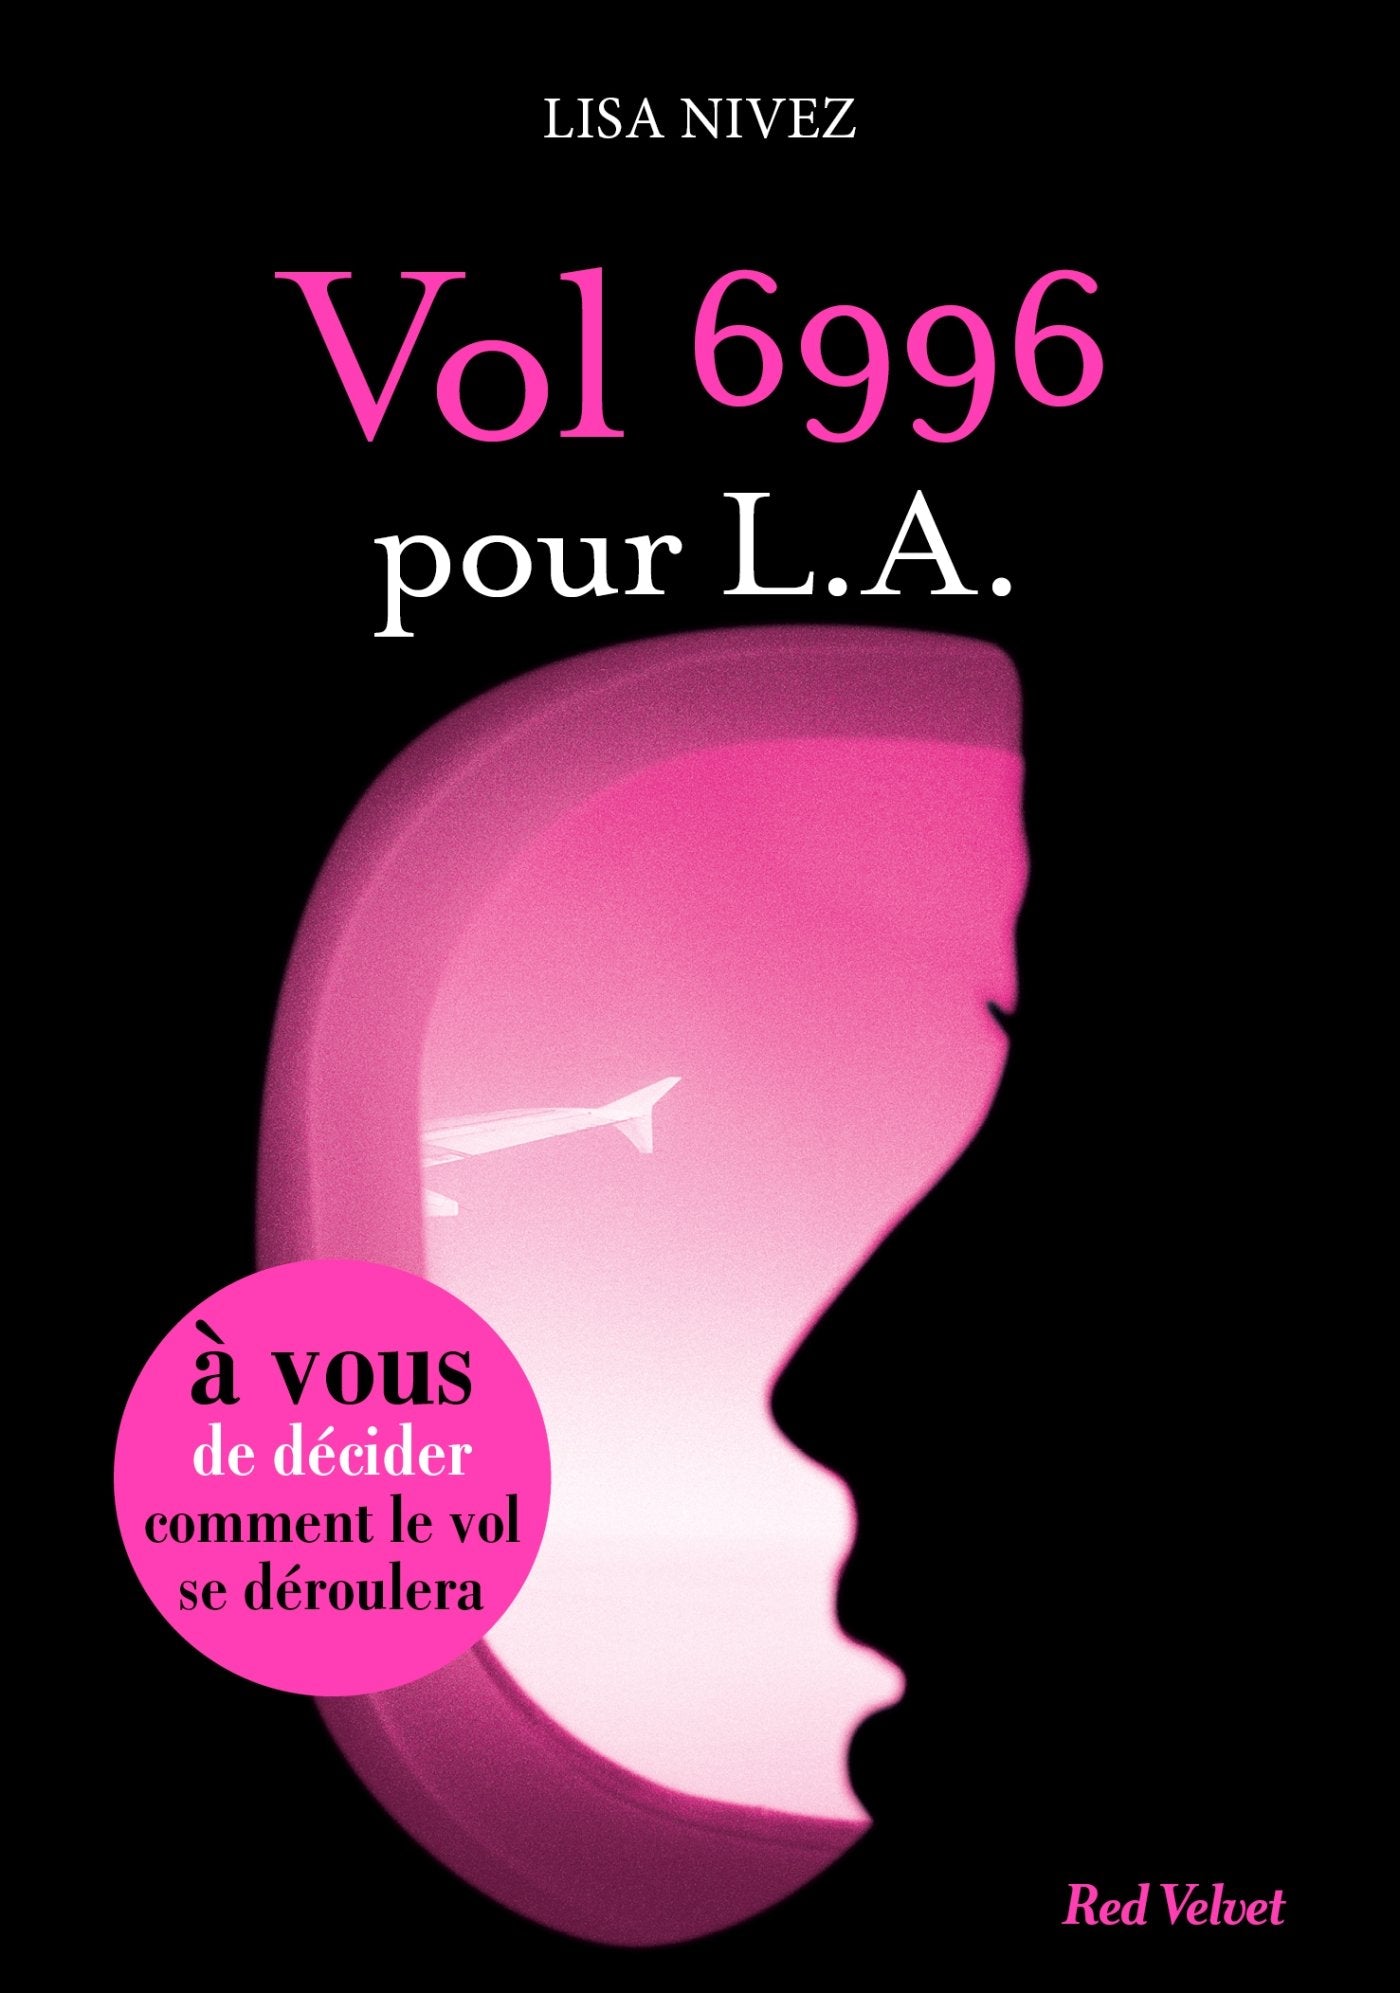 Red Velvet : Vol 6996 pour L.A. - Lisa Nivez